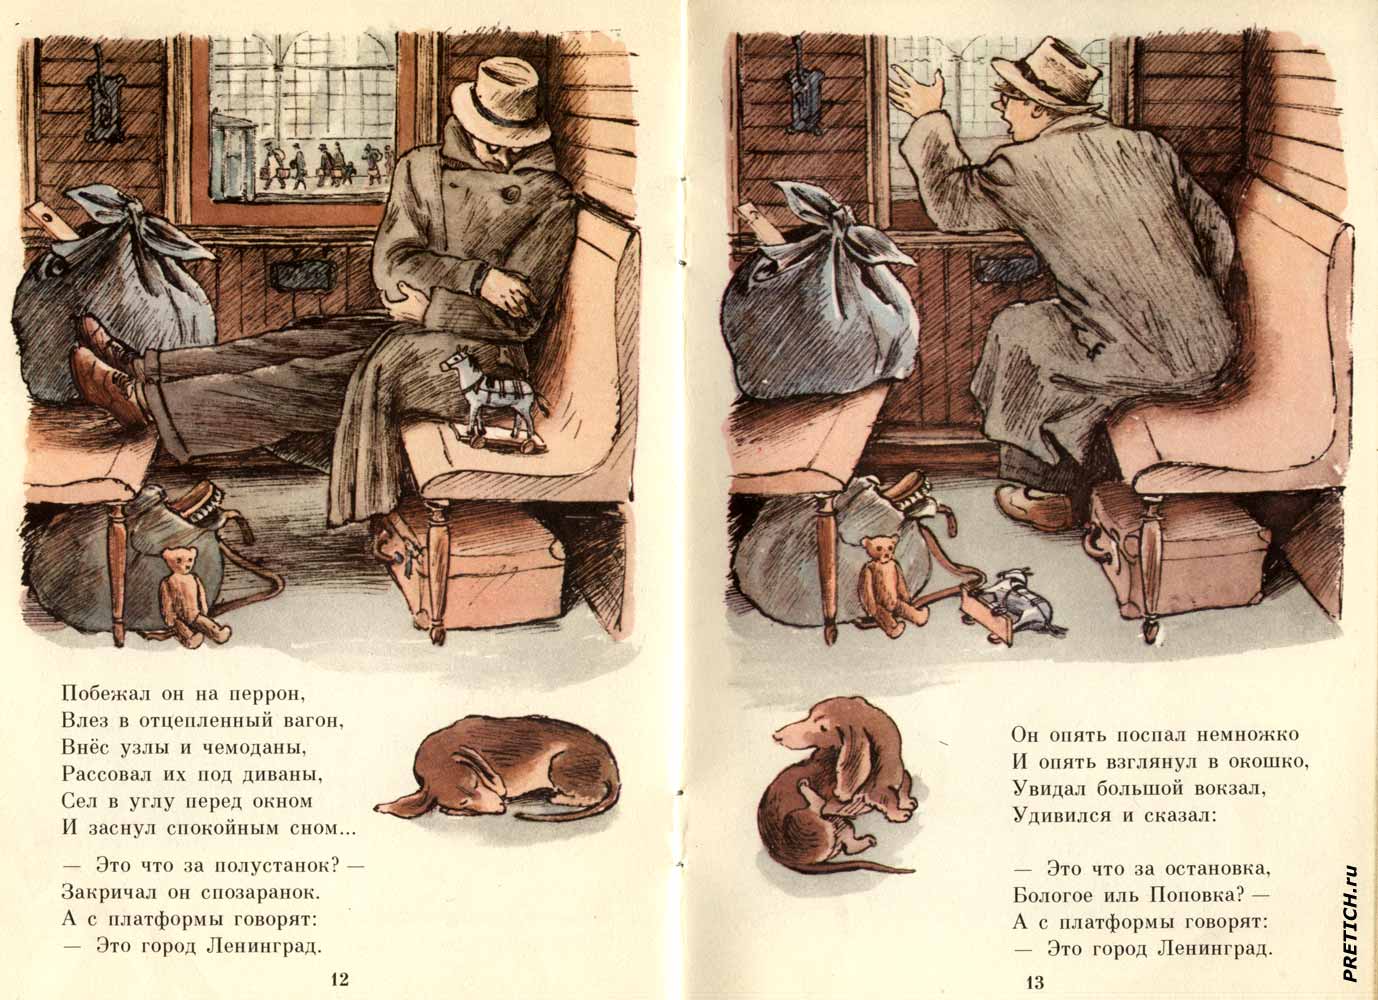 отсканированные детские книжки с прекрасными советскими рисунками